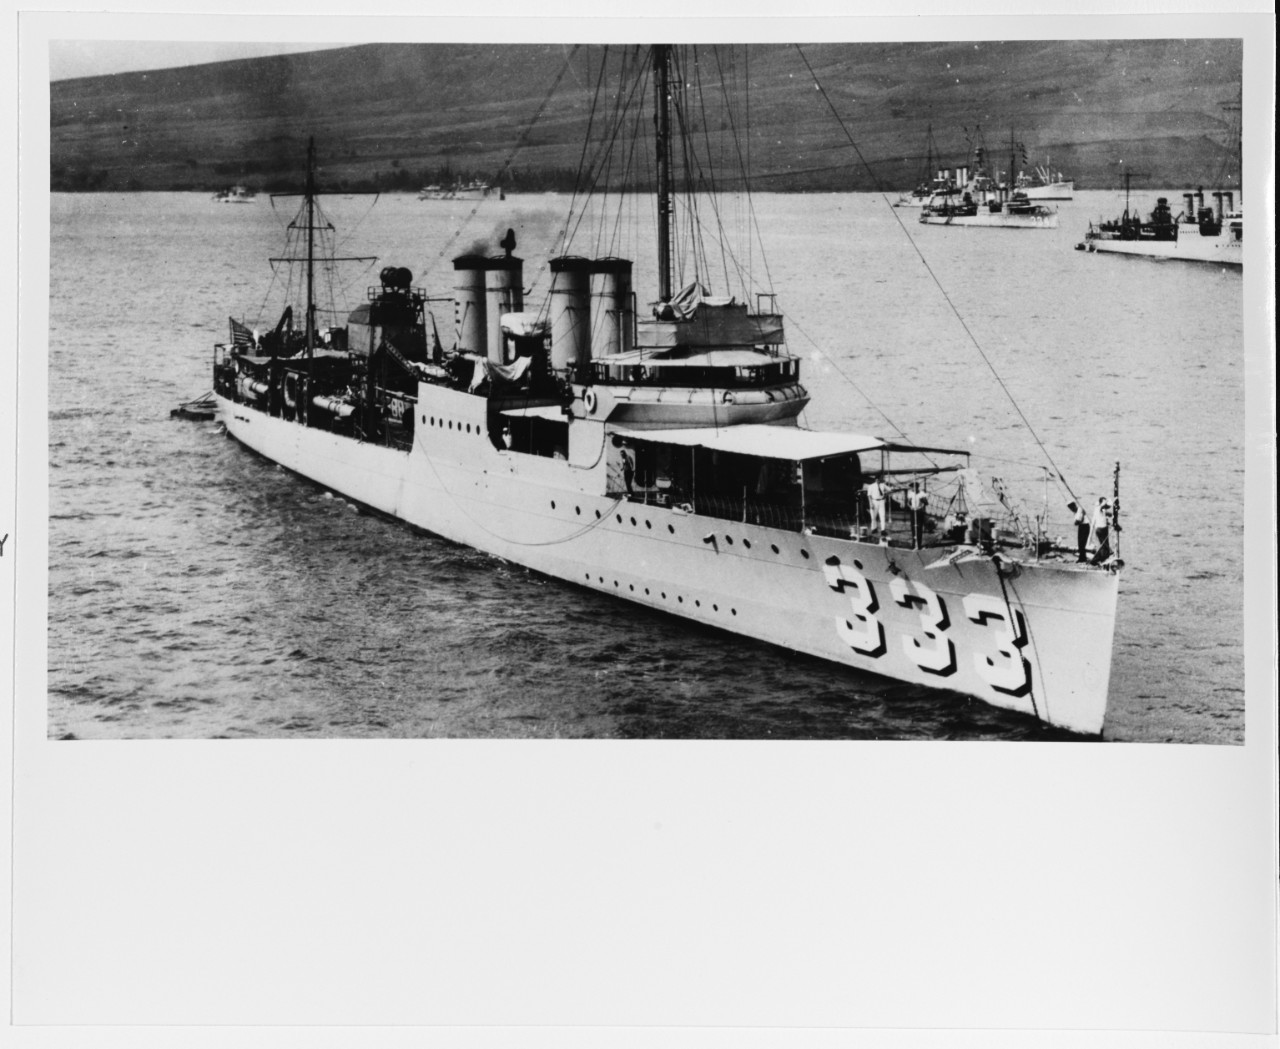 USS SUMNER (DD-333)